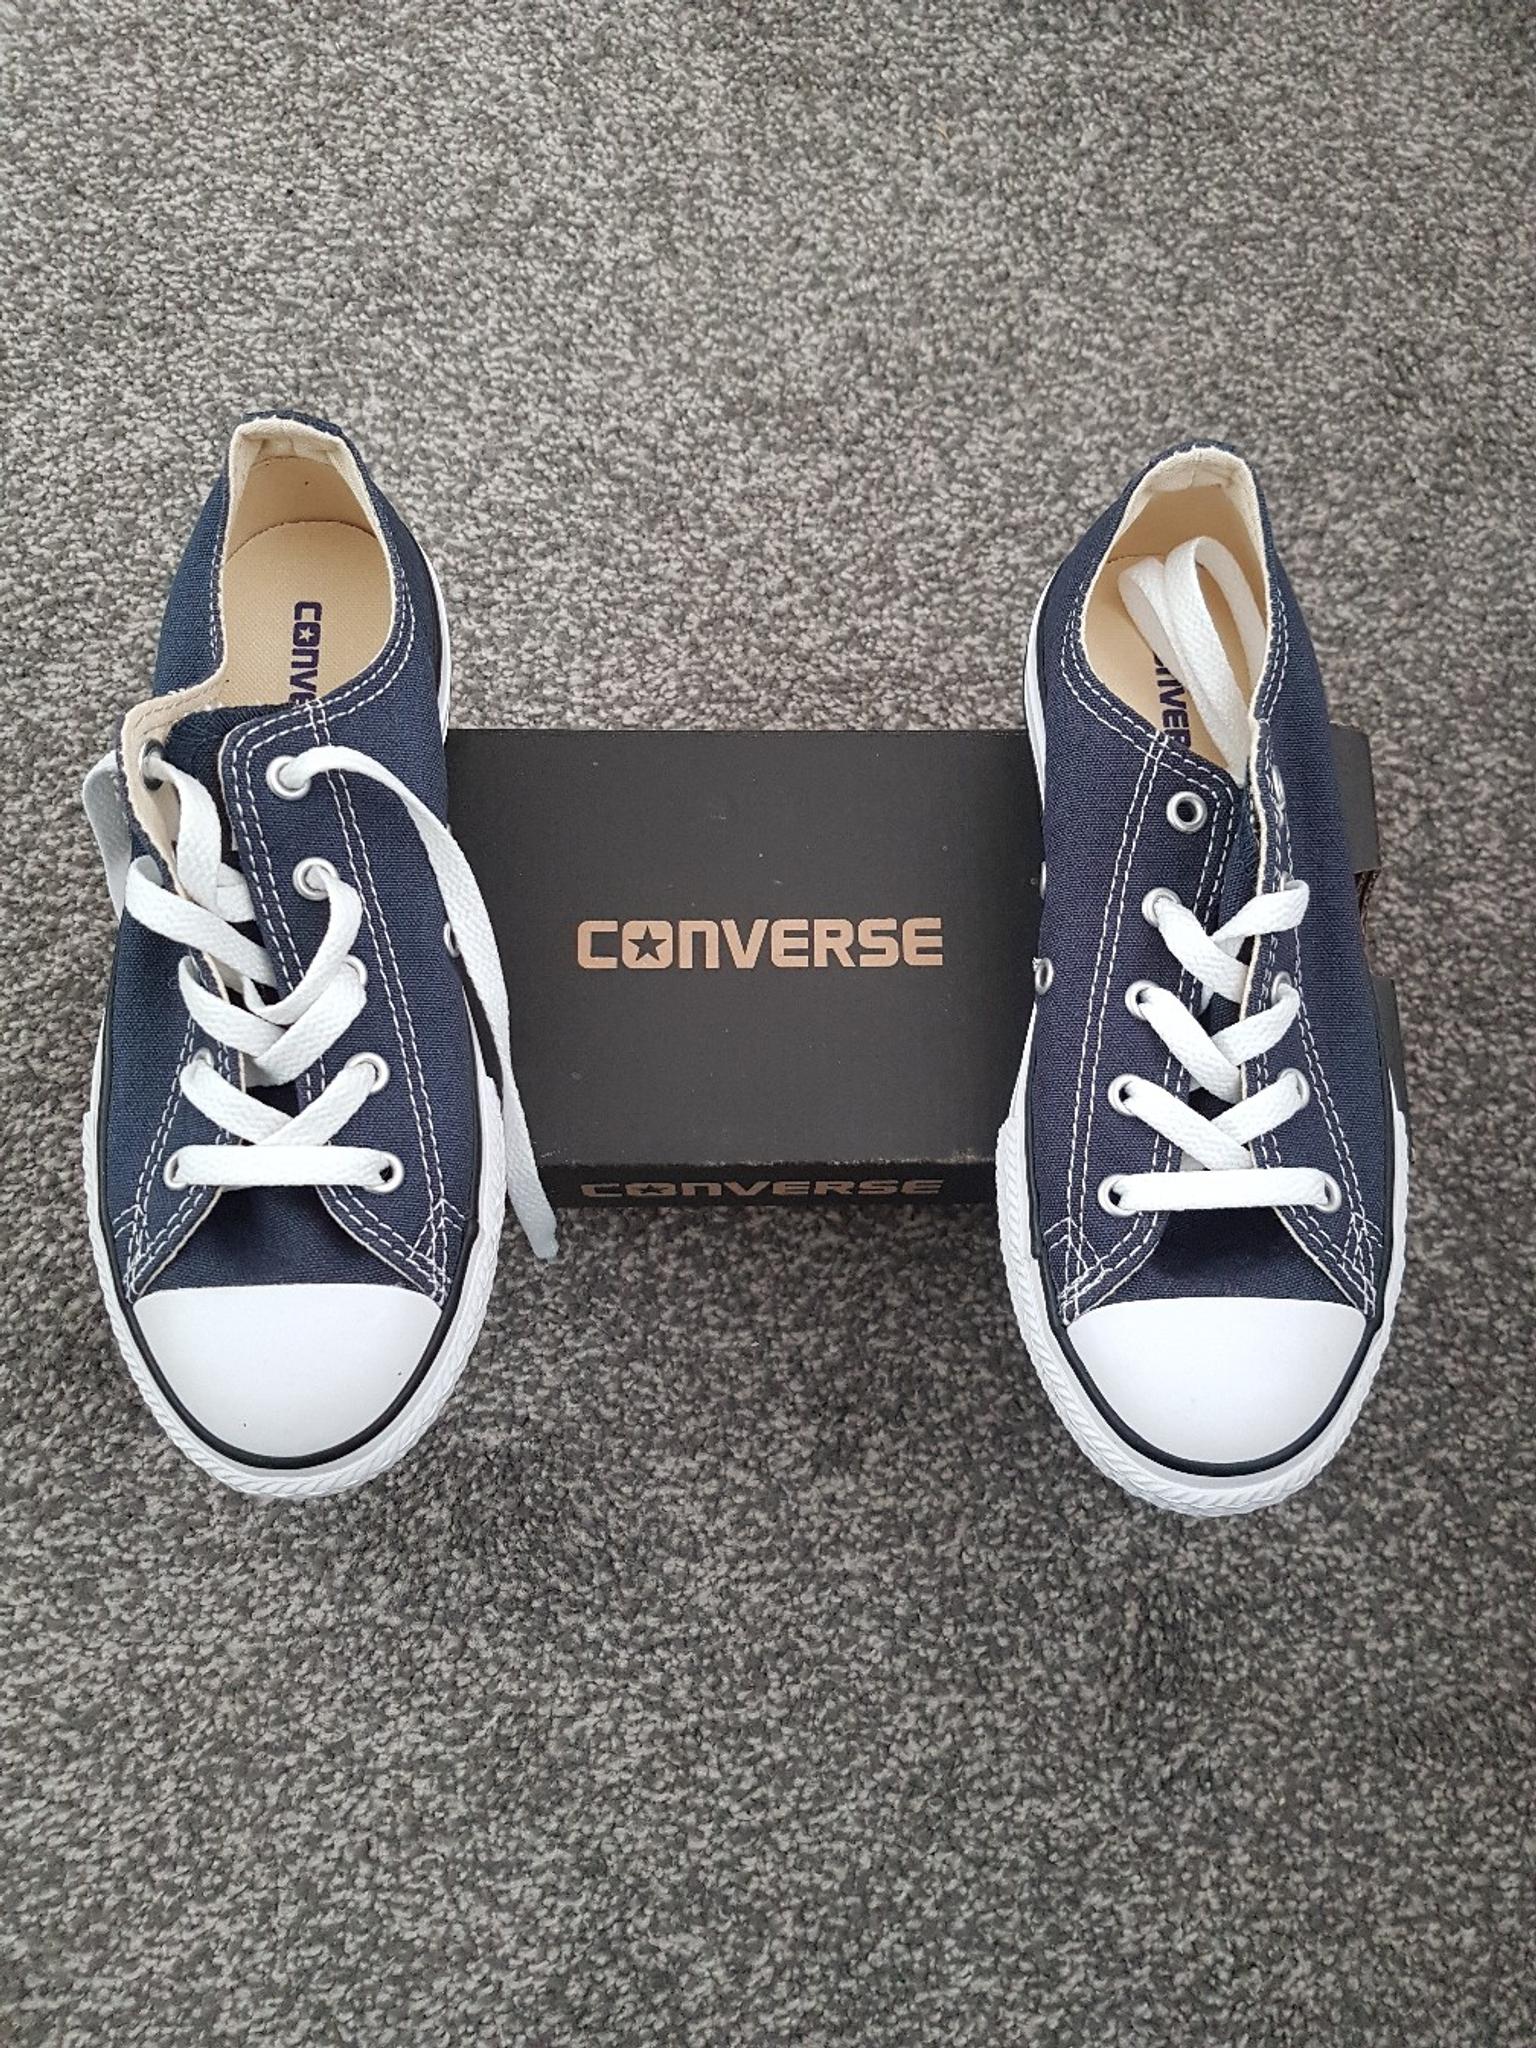 converse size 1.5 uk